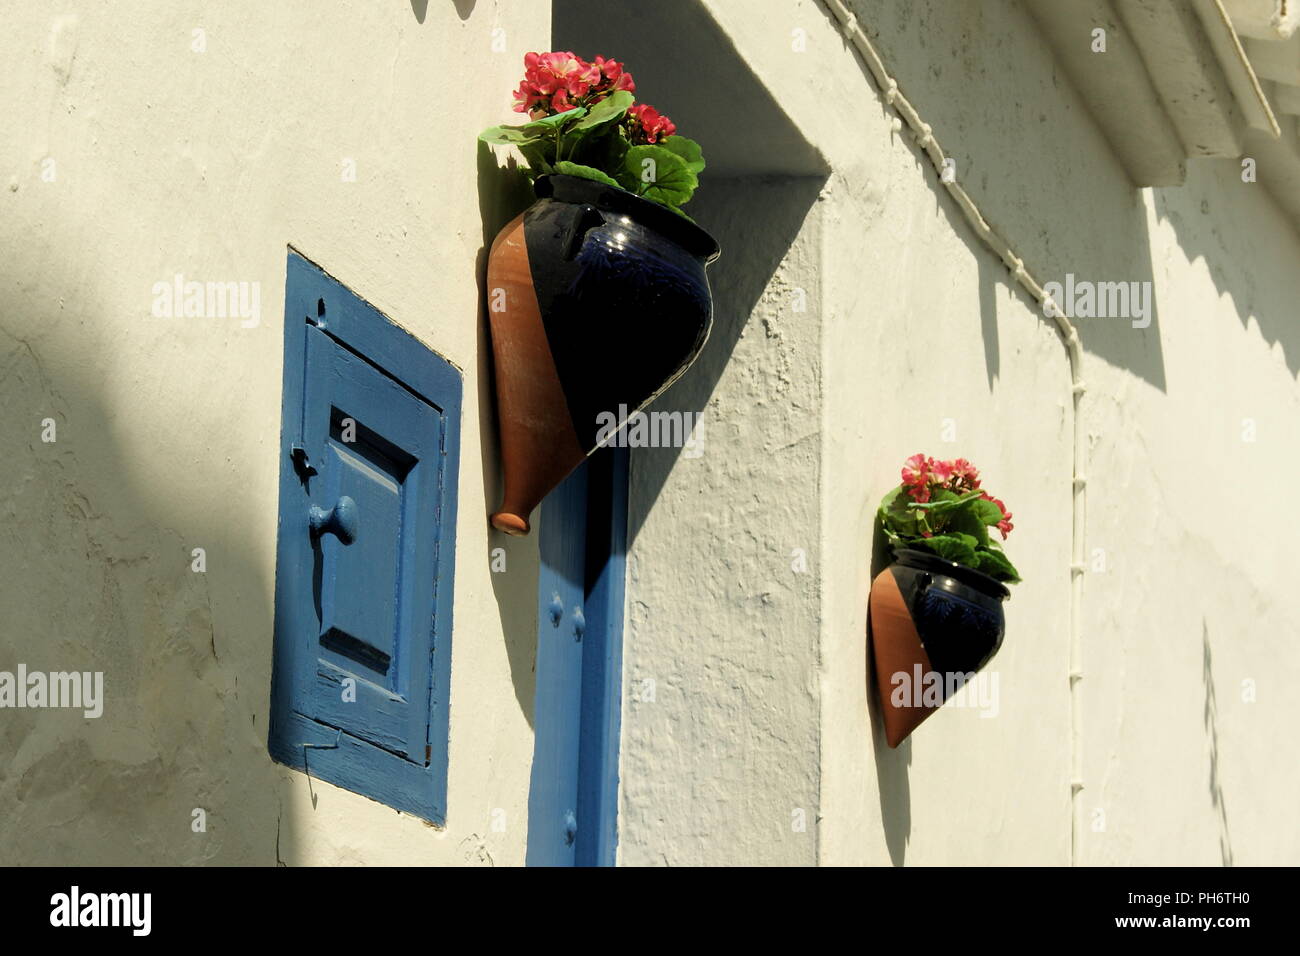 Spanien, Andalusien, das kleine, schöne Dorf Frigiliana. Hübsche Hängekörbe mit Blumen verleihen einer Gasse in der Altstadt Farbe. Stockfoto